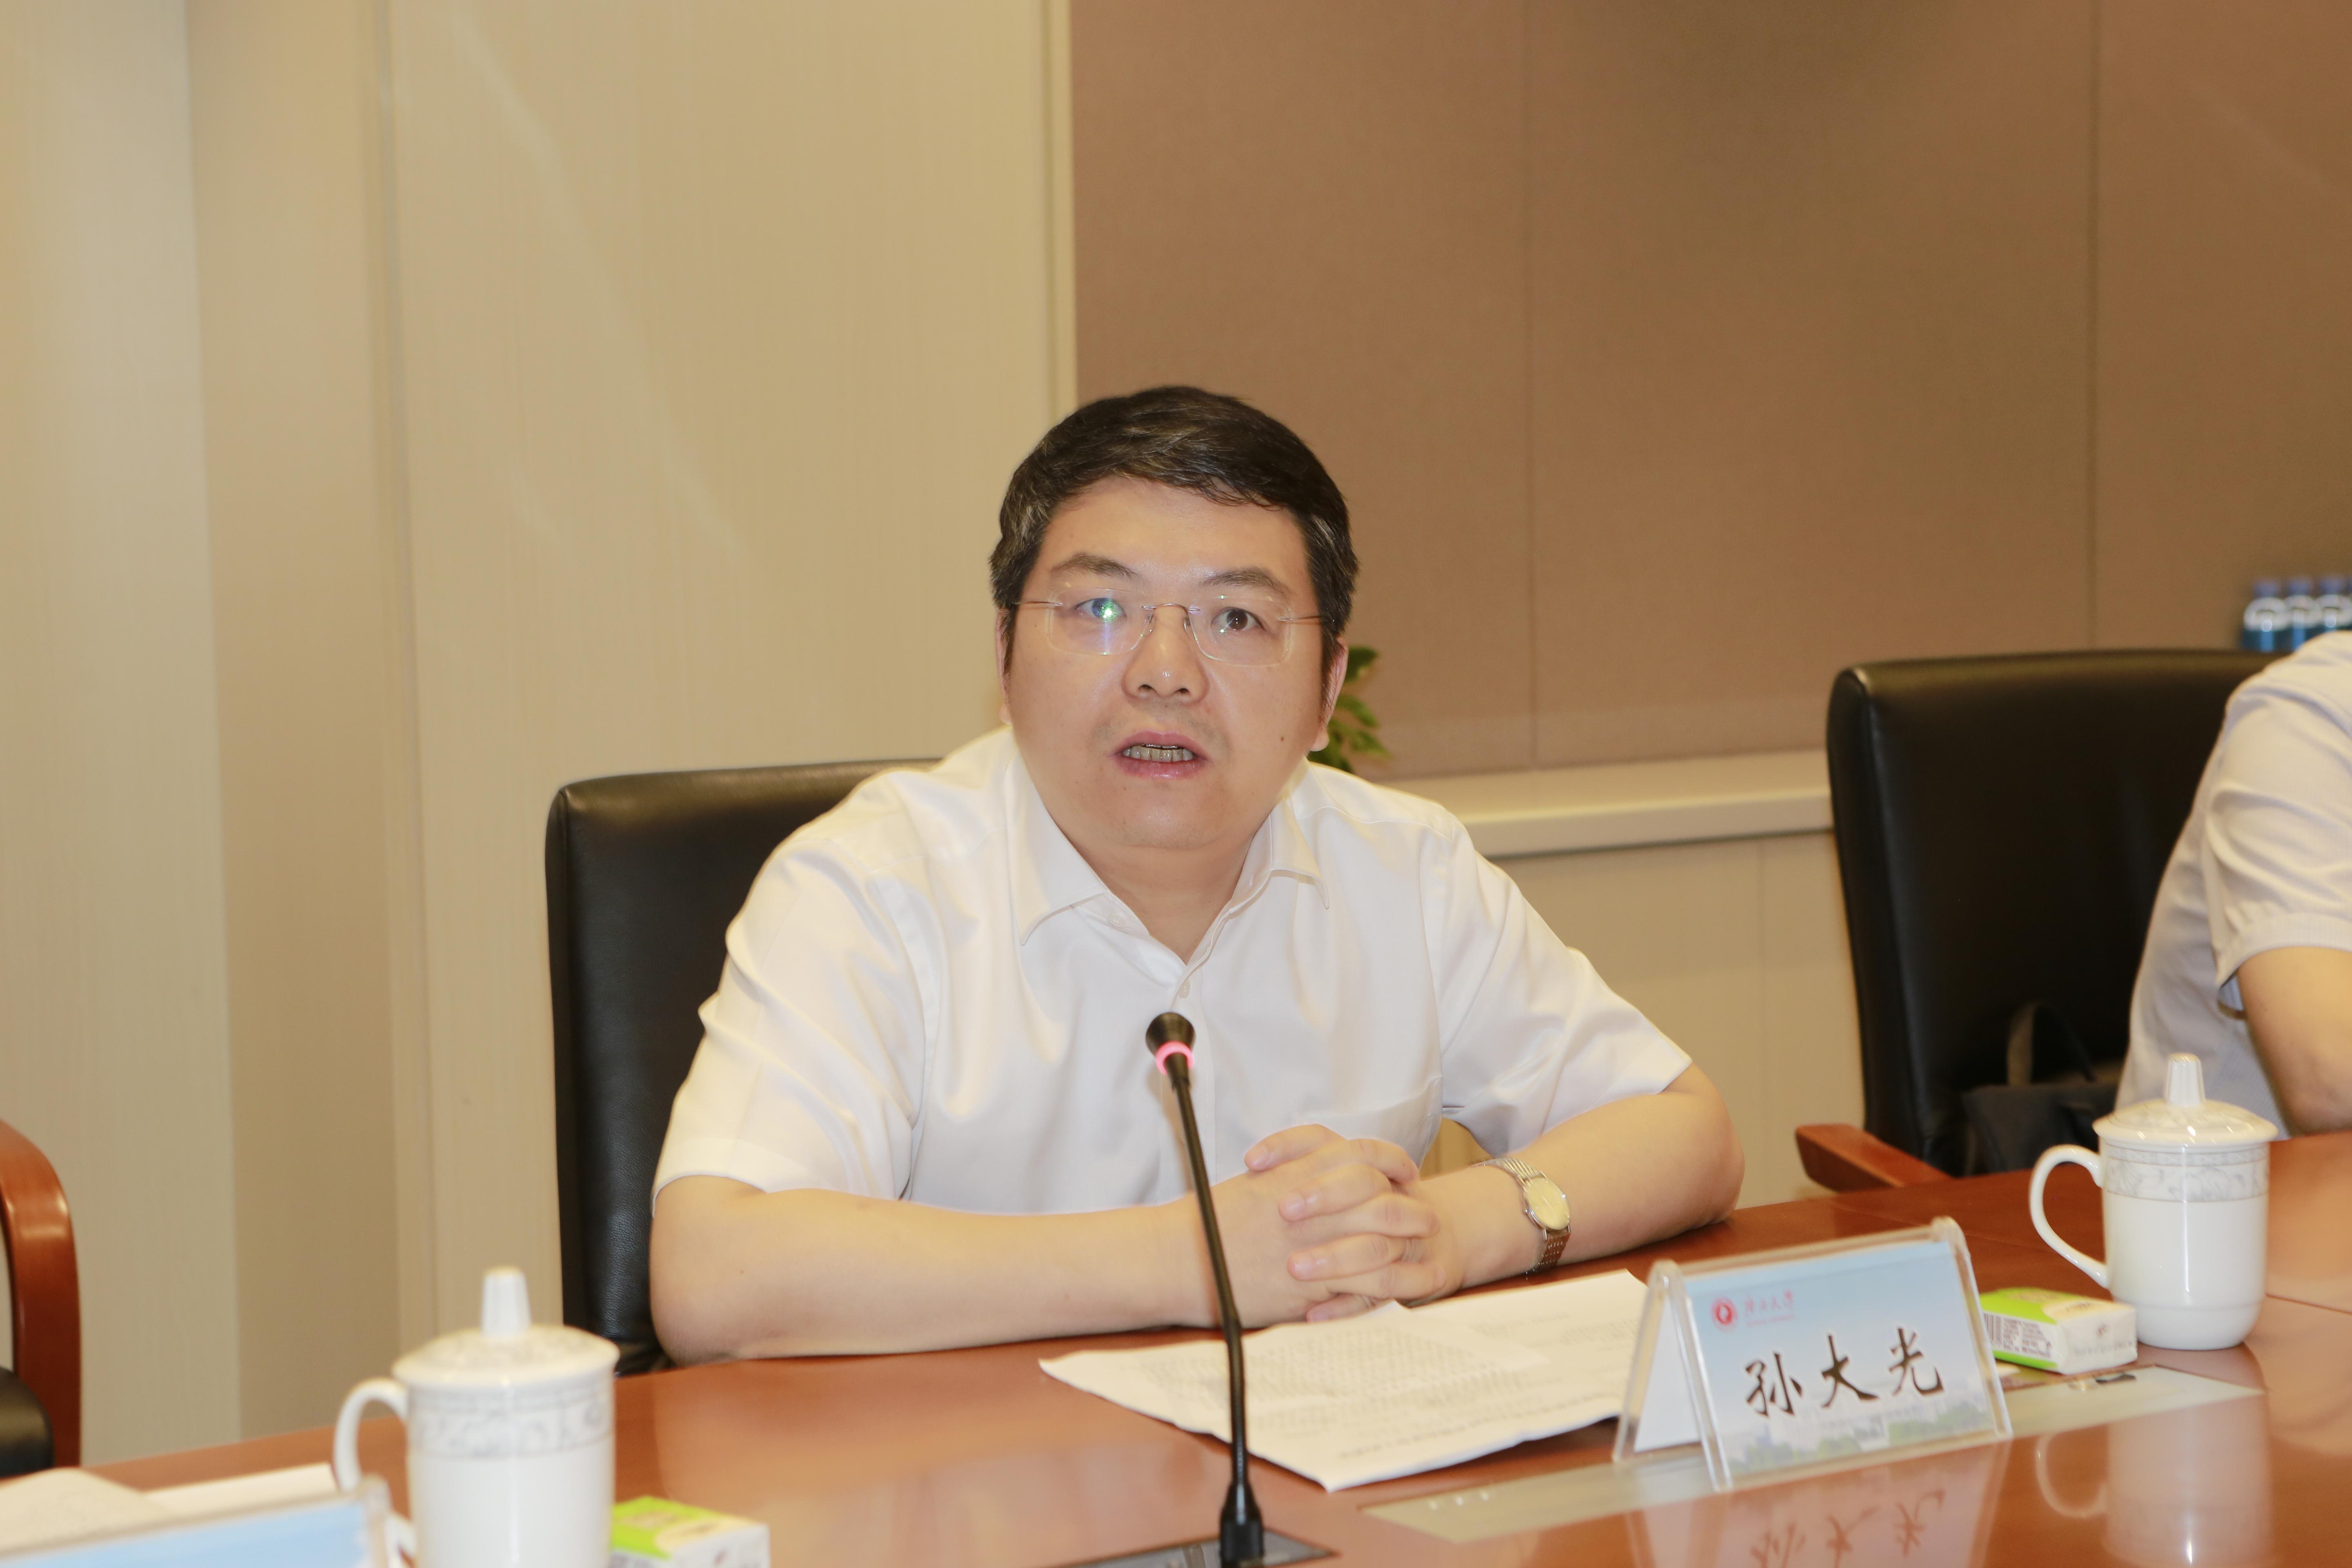 自治区党委宣传部常务副部长孙大光在会上致辞,他说这是广西新闻传播